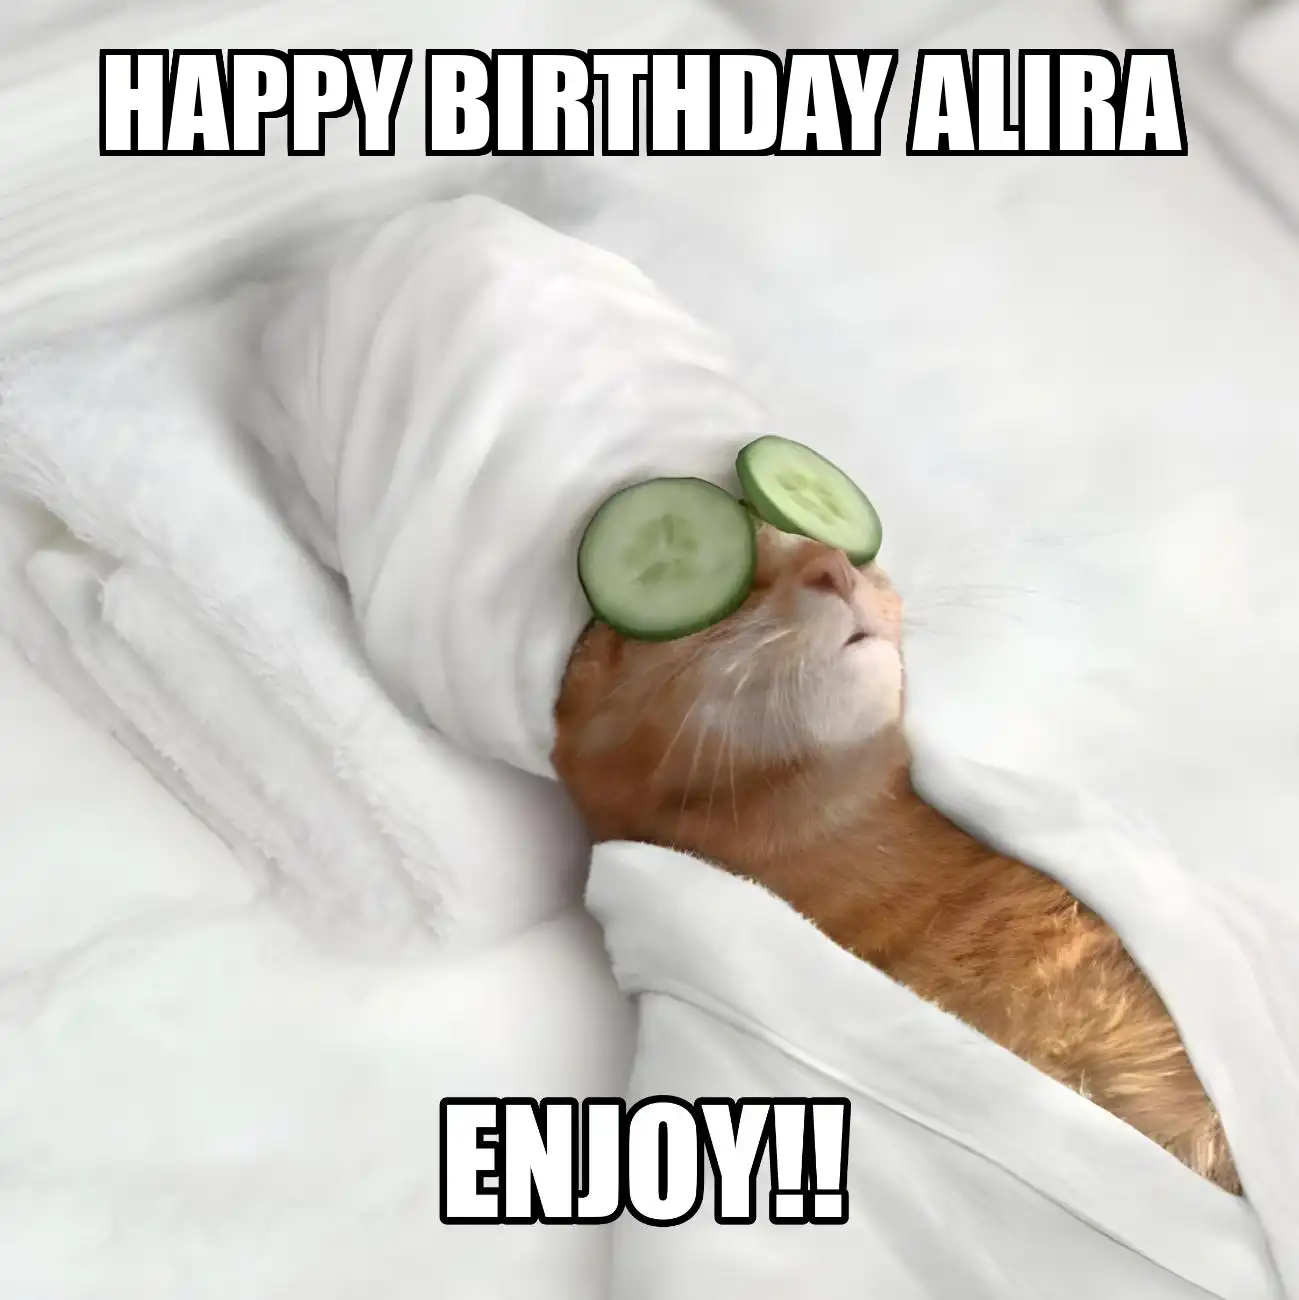 Happy Birthday Alira Enjoy Cat Meme